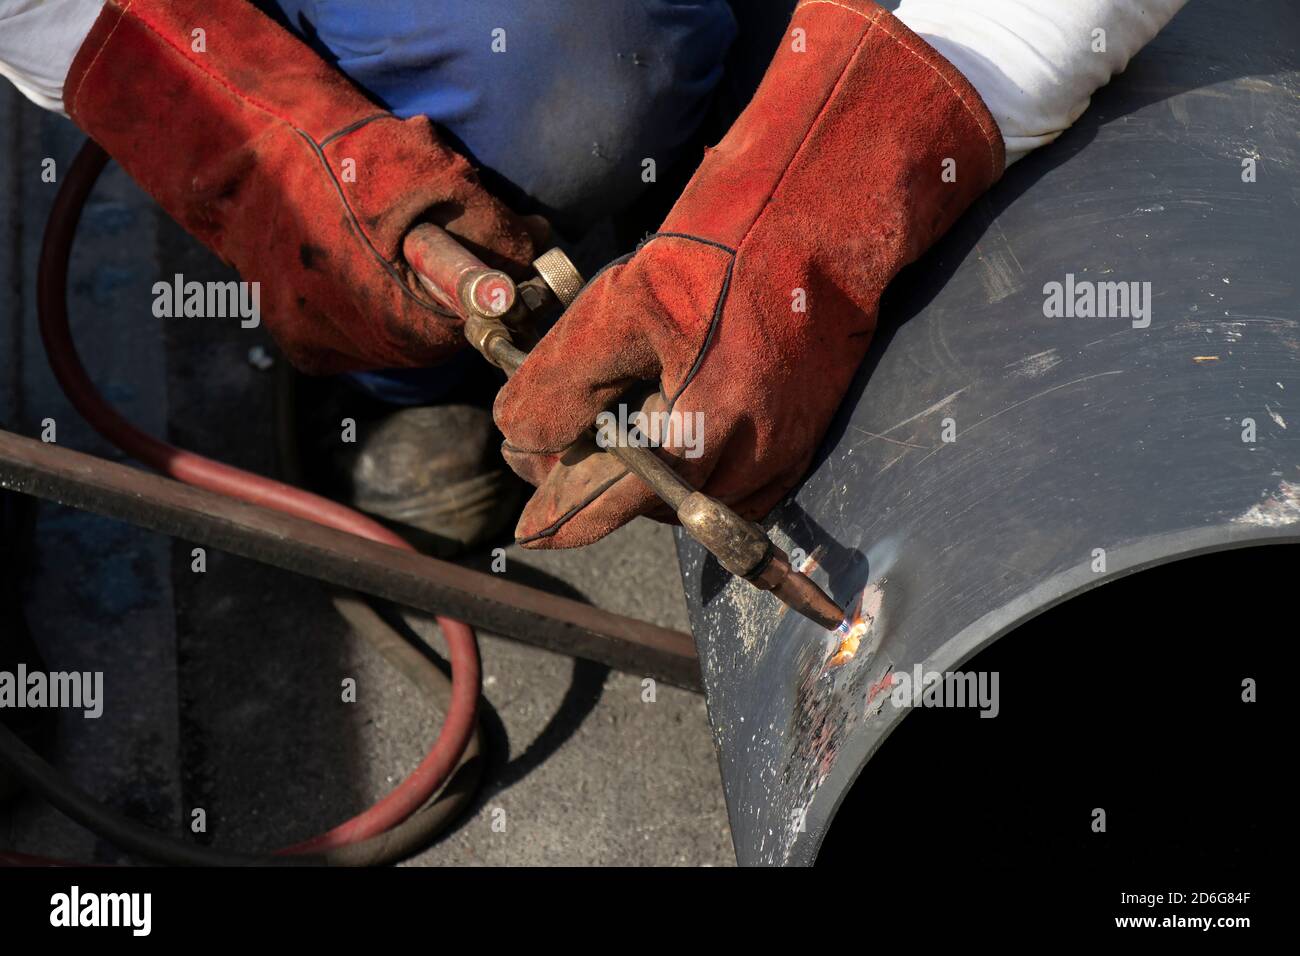 Schweißer Arbeiter schweißen ein breites Metallrohr mit einem Oxy-Fuel-Schneidbrenner., Nahaufnahme Detail der Hände und Brennergriff Stockfoto